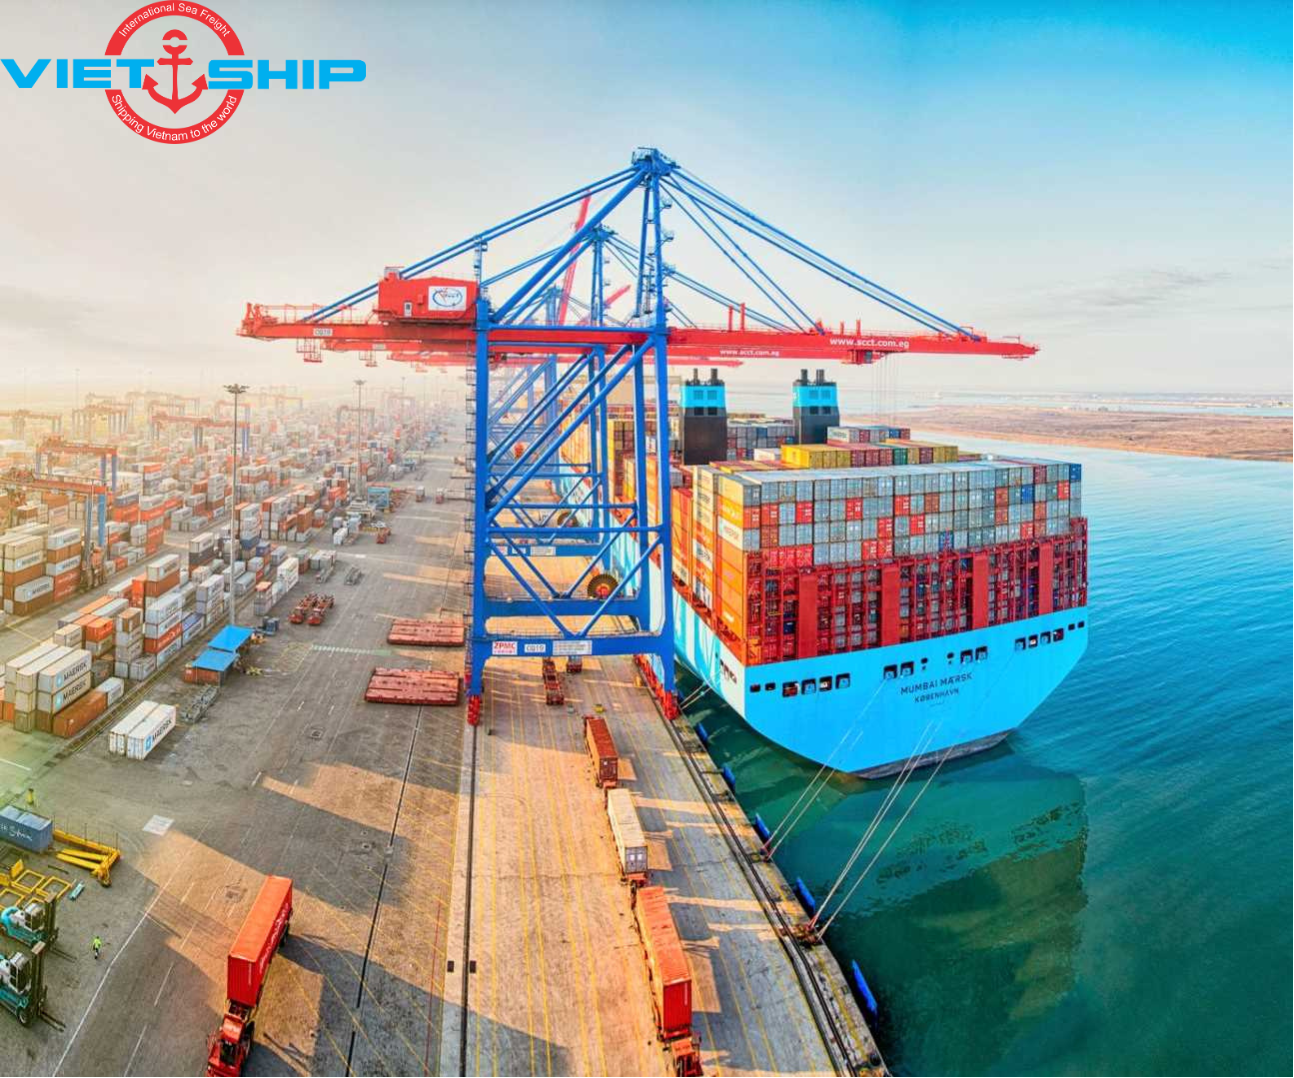 Cảng Thiên Tân – điểm trọng yếu vận chuyển hàng hóa giữa 2 châu lục